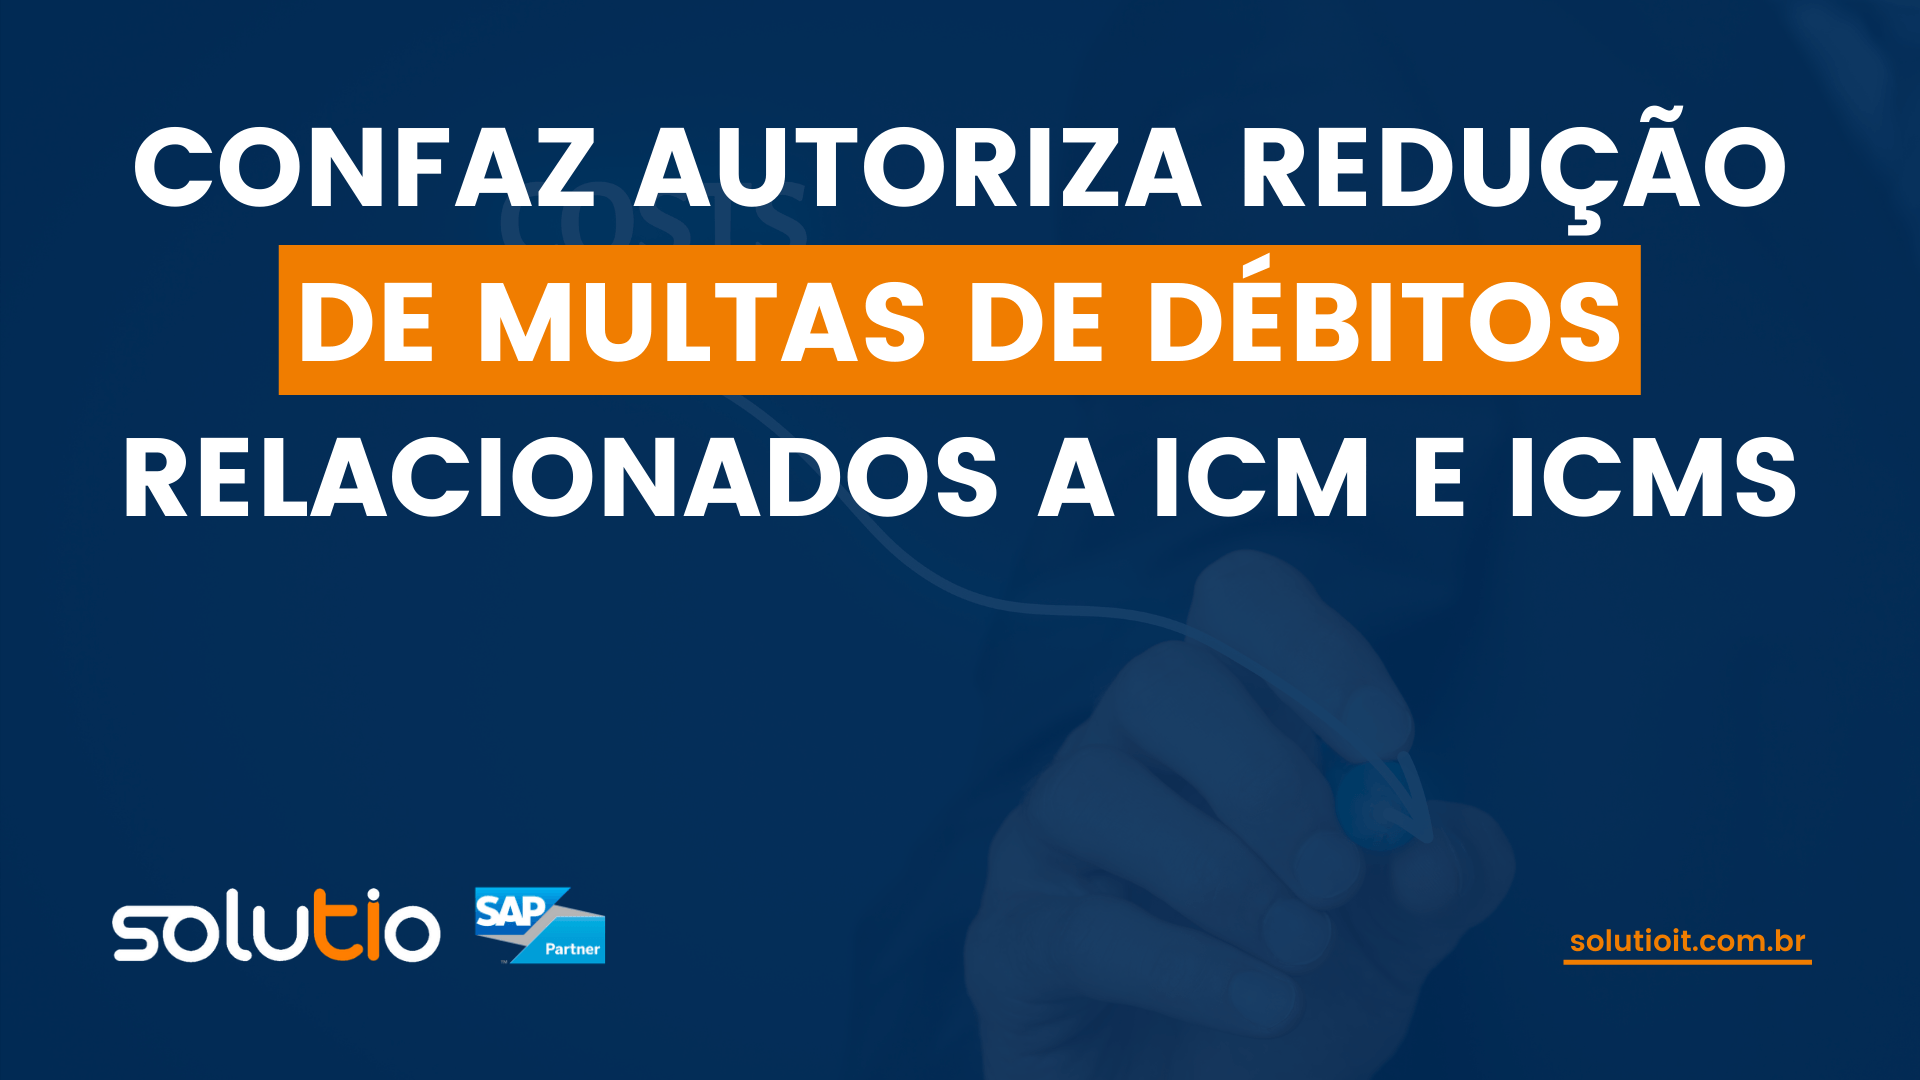 CONFAZ autoriza redução de multas de débitos relacionados a ICM e ICMS